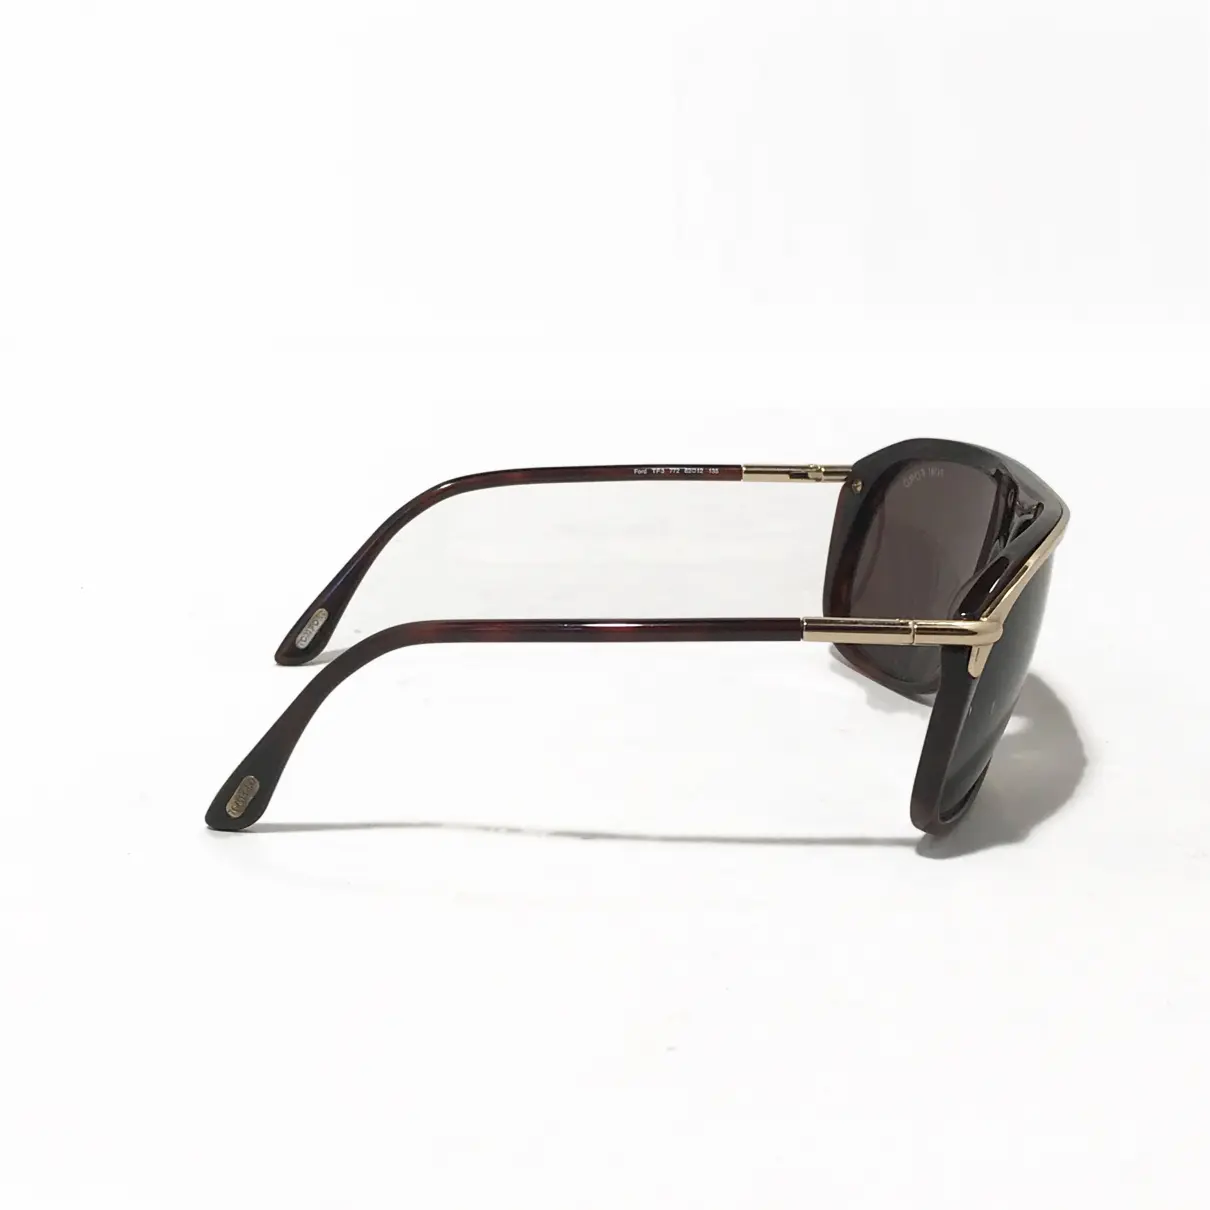 Luxury Tom Ford Sunglasses Men